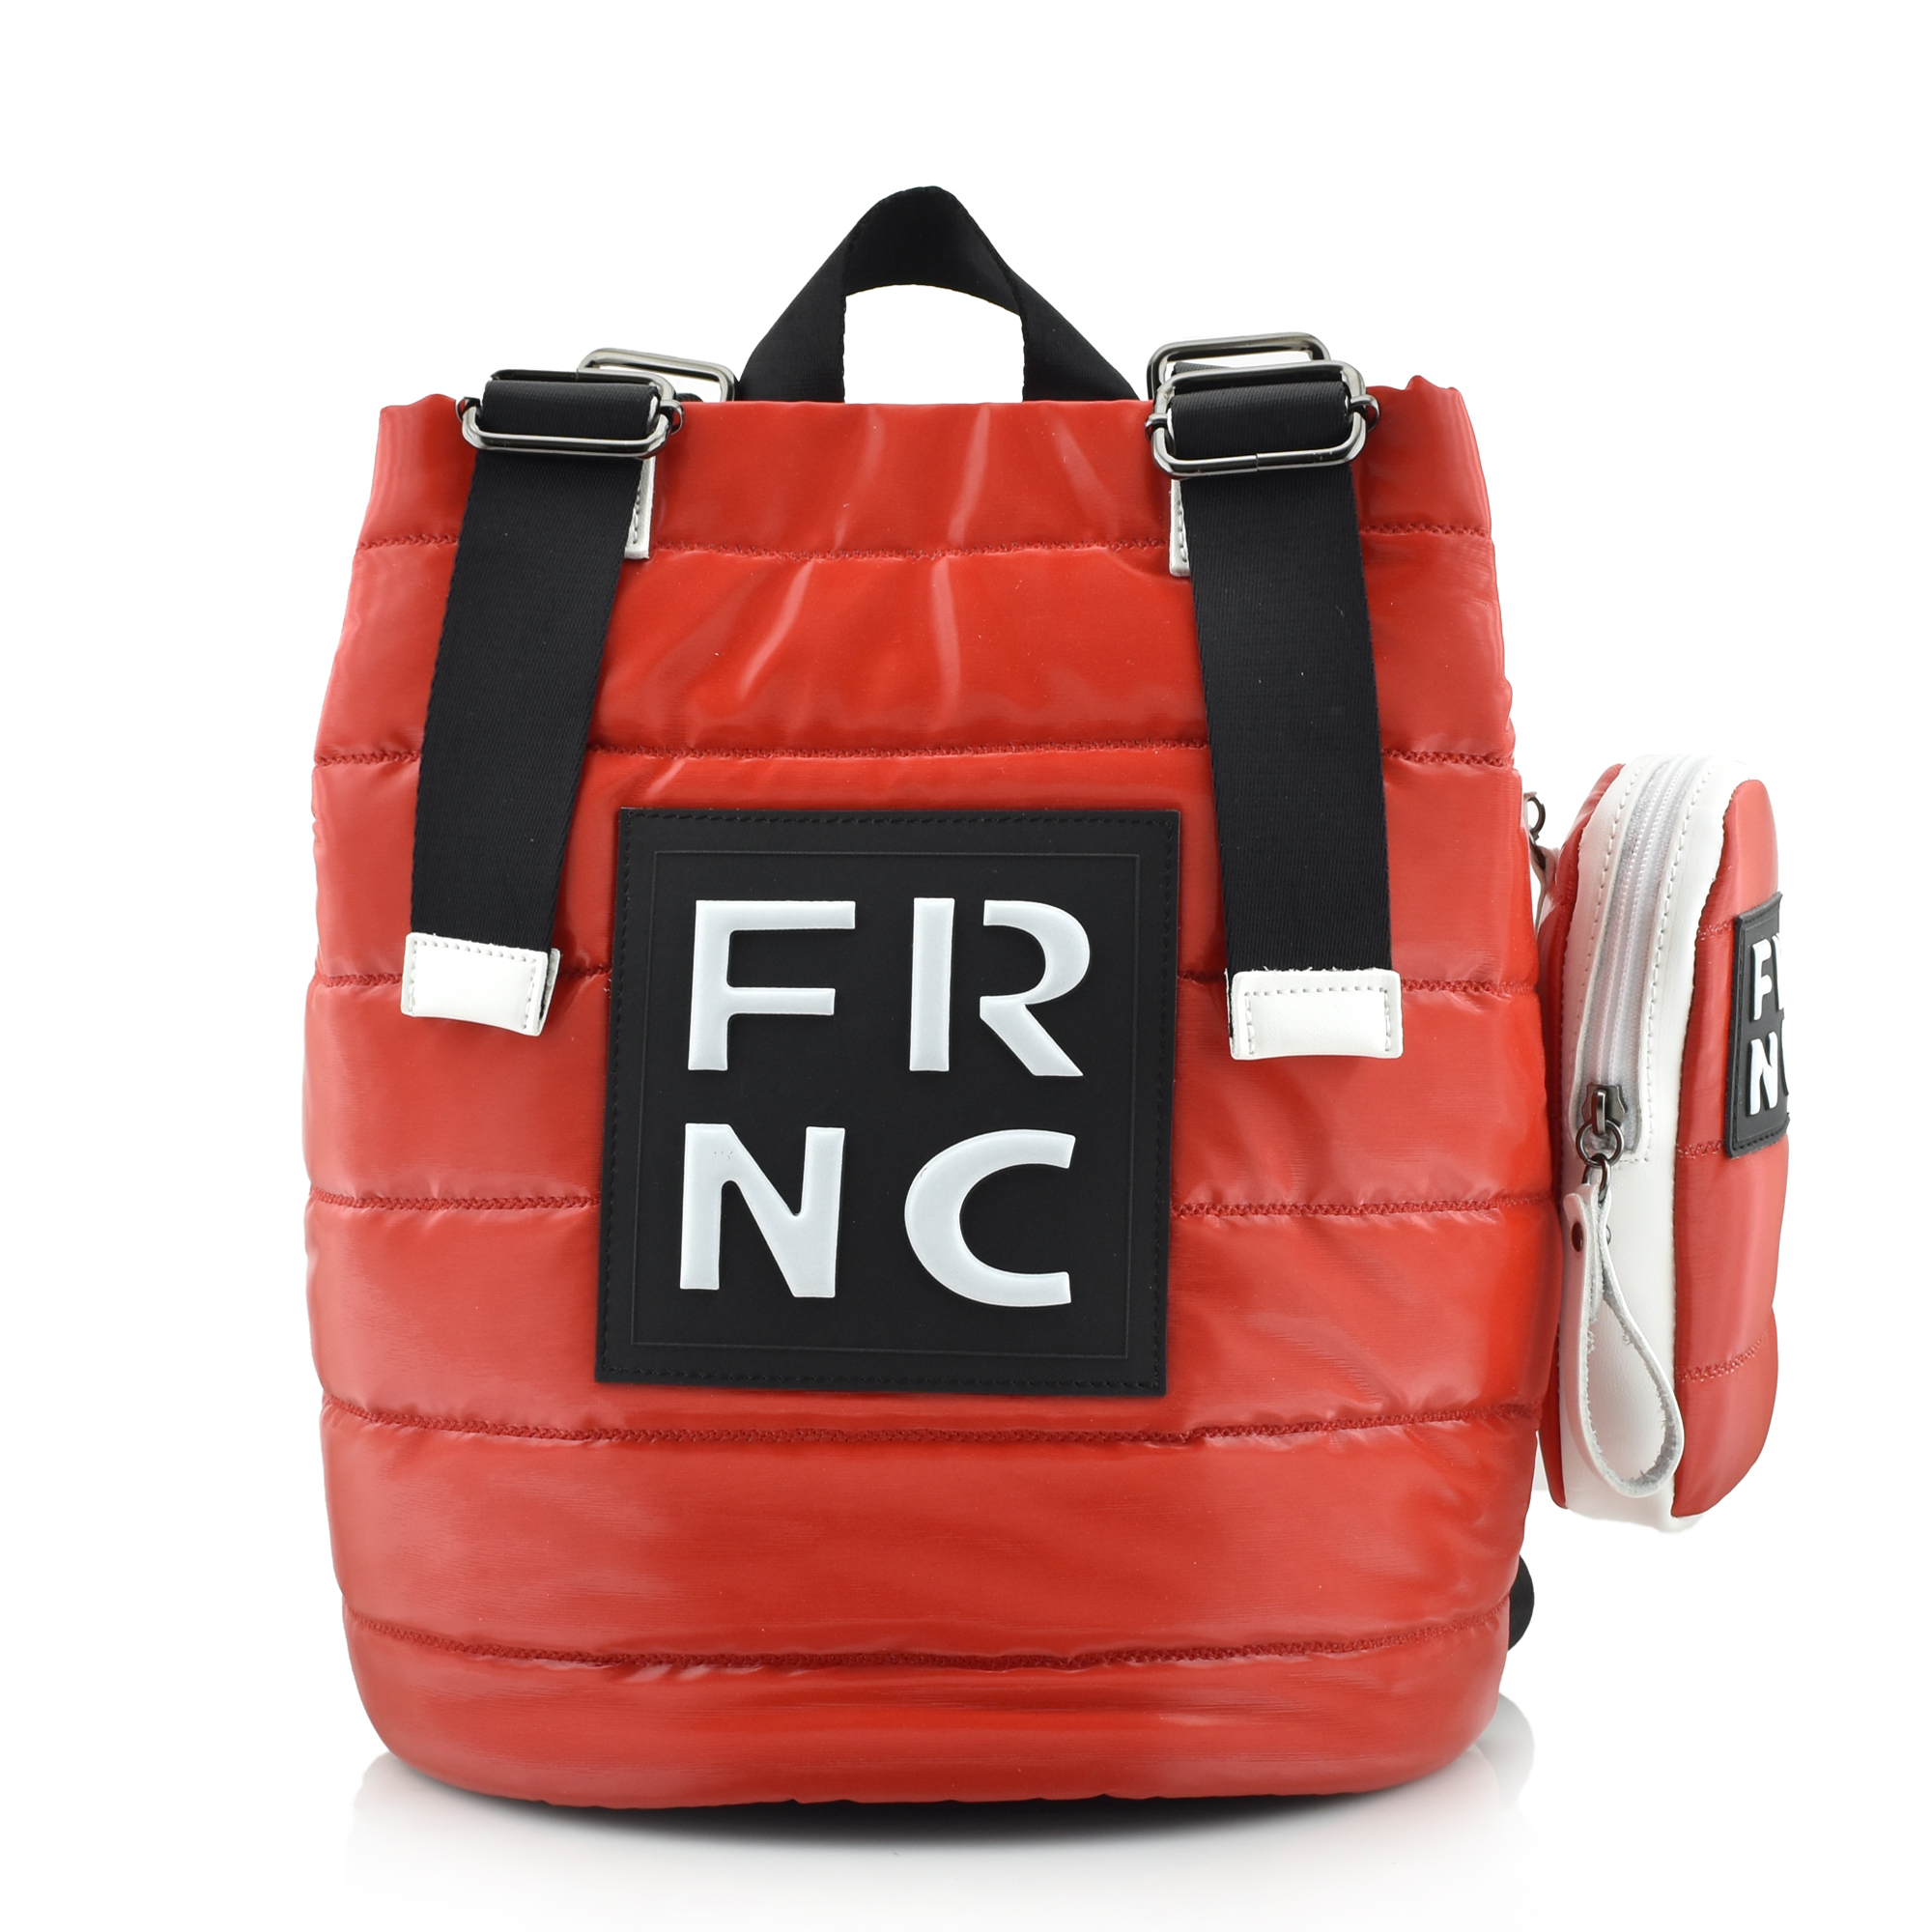 FRNC - FRANCESCO BIG SHINY BACKPACK - 2300 RED